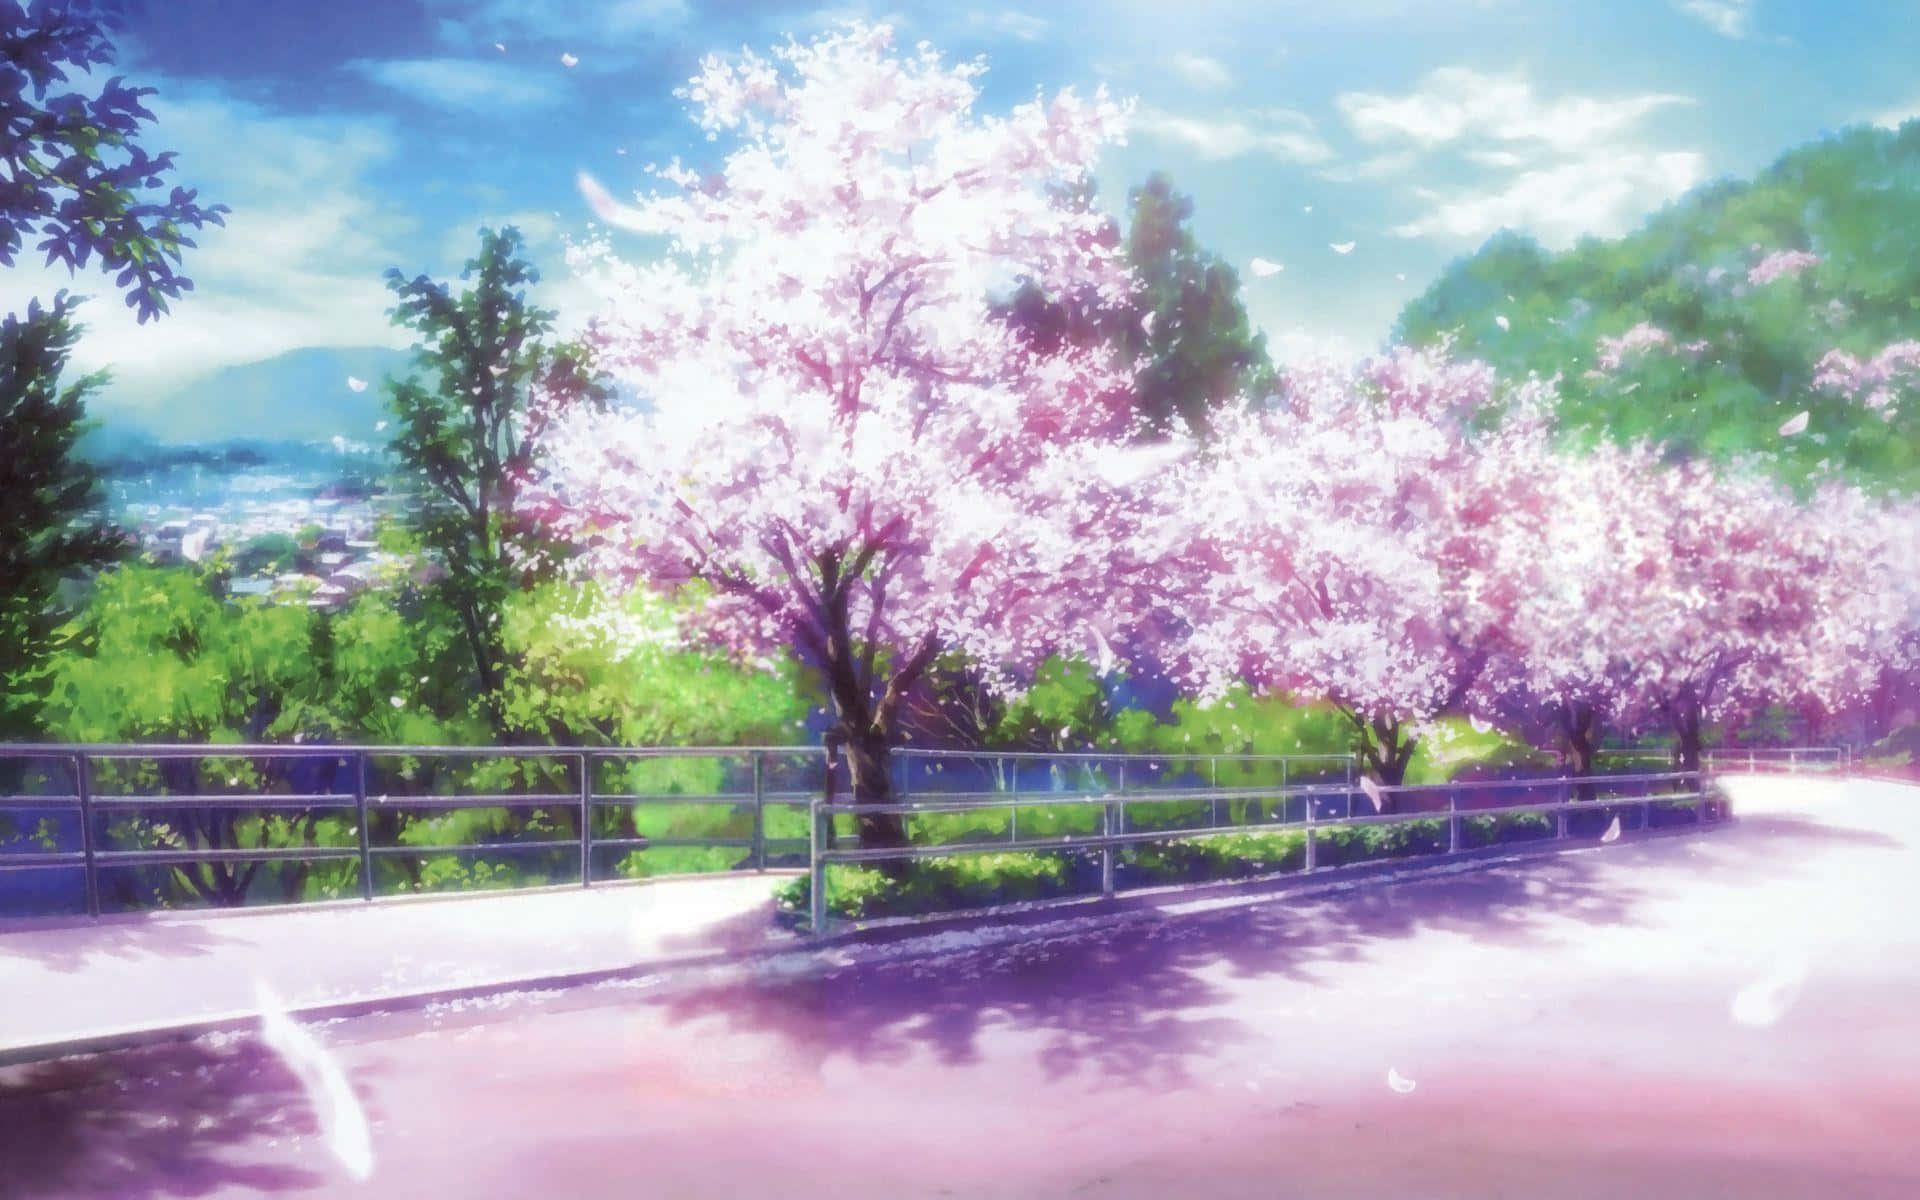 Faiuna Tranquilla Passeggiata Ammirando La Bellezza Degli Alberi Di Ciliegio In Un'ambientazione Unica Con Stile Anime. Sfondo